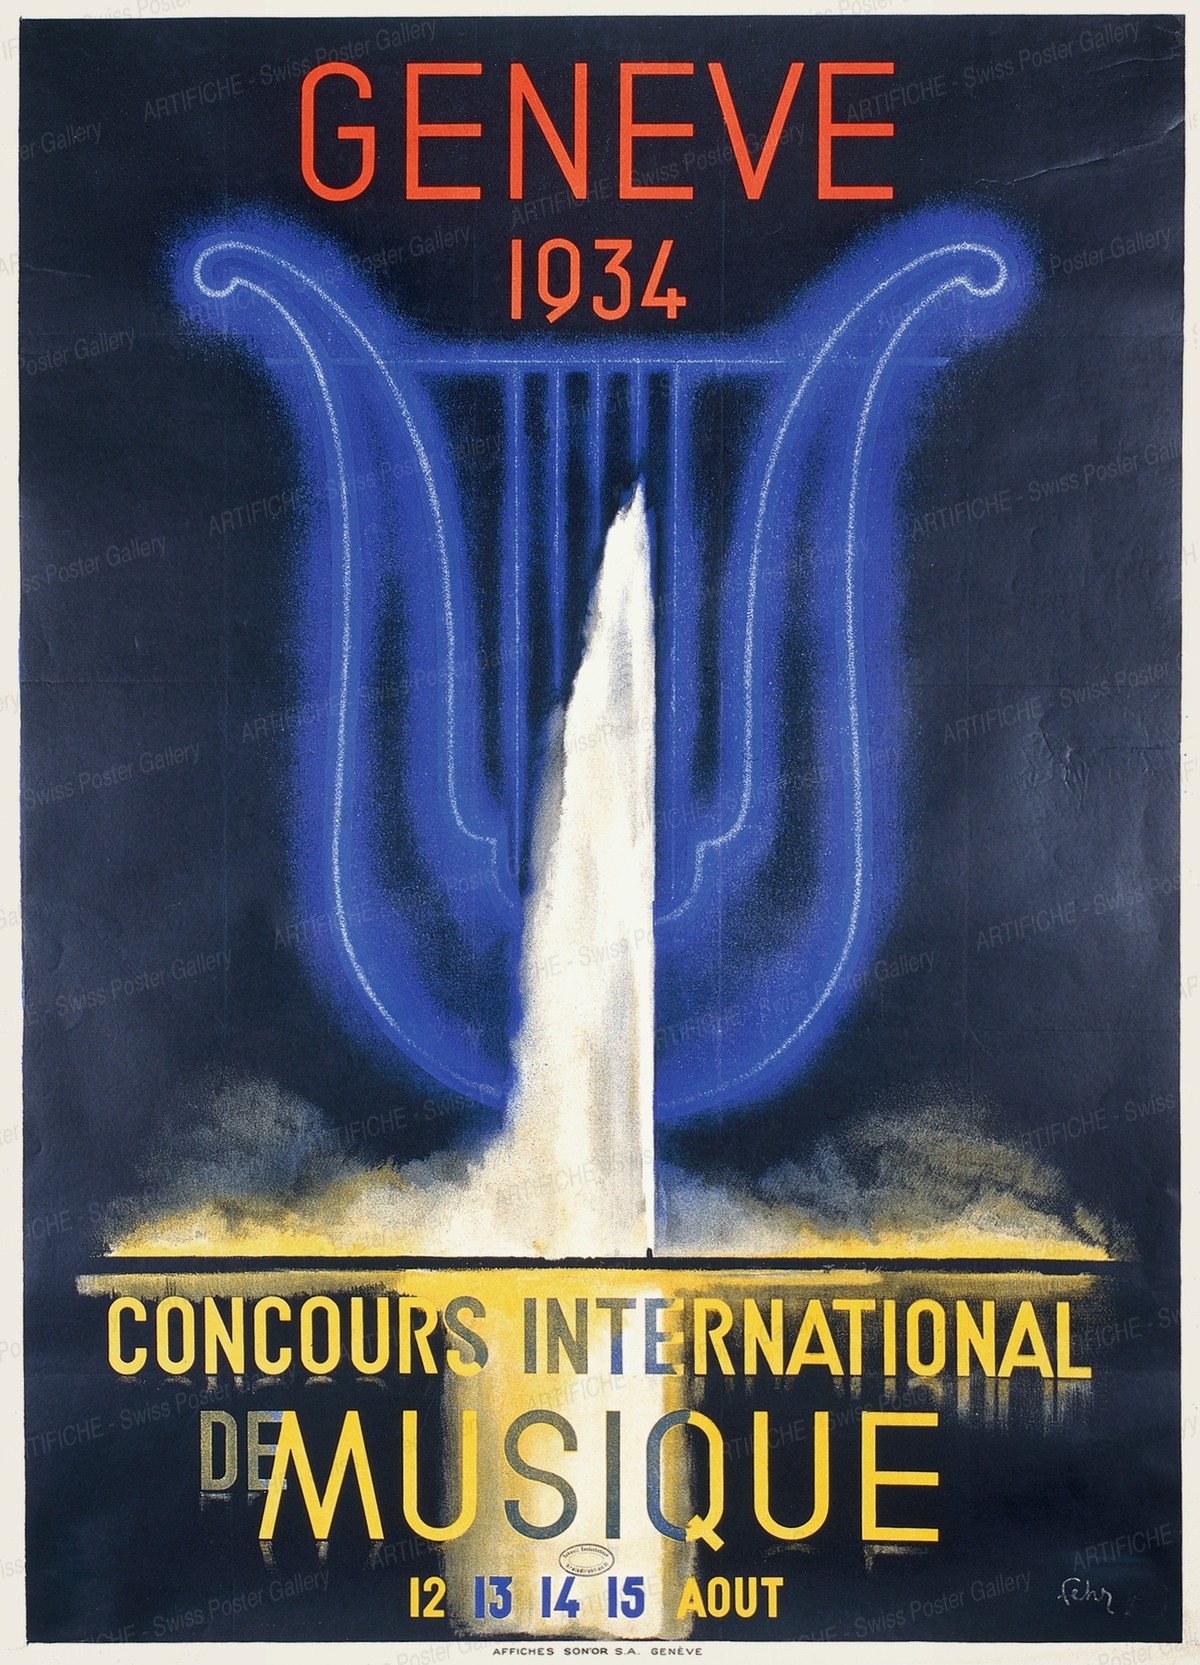 Concours international musique, Genève 1934, Henri Fehr